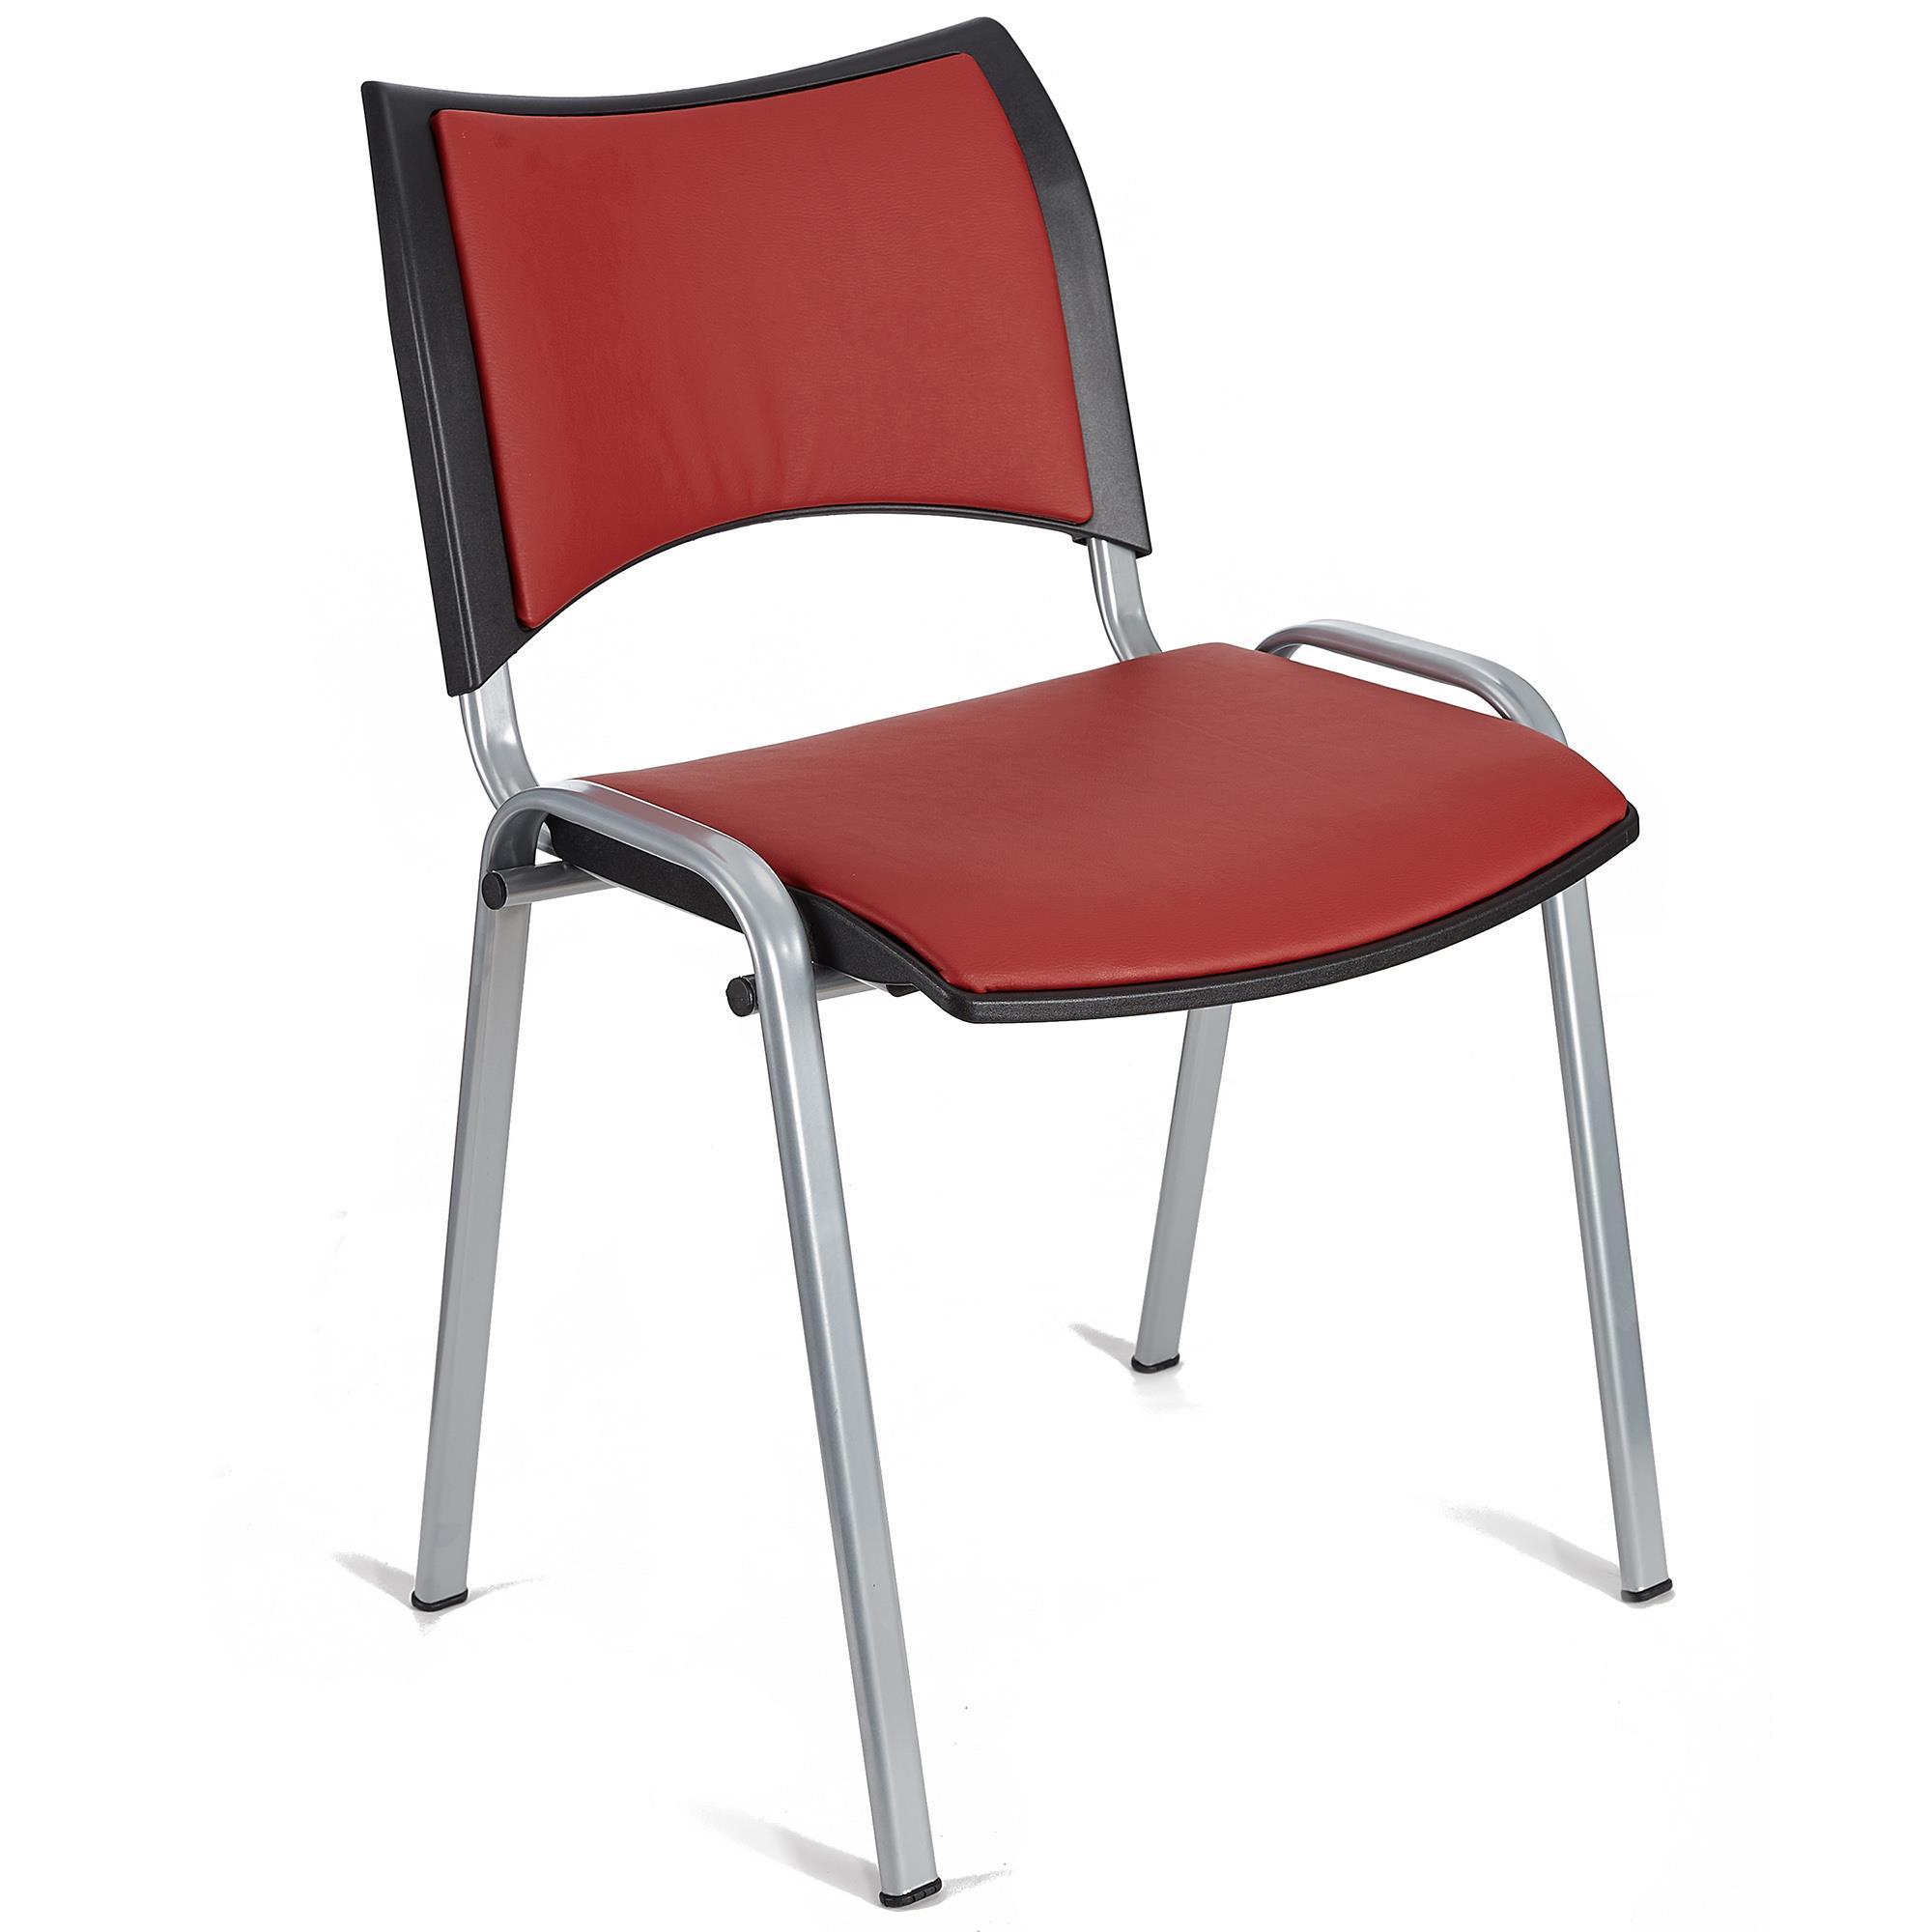 Cadeira de Visita ROMEL PELE, Prática e Empilhável, Pernas Cinza, Vermelho